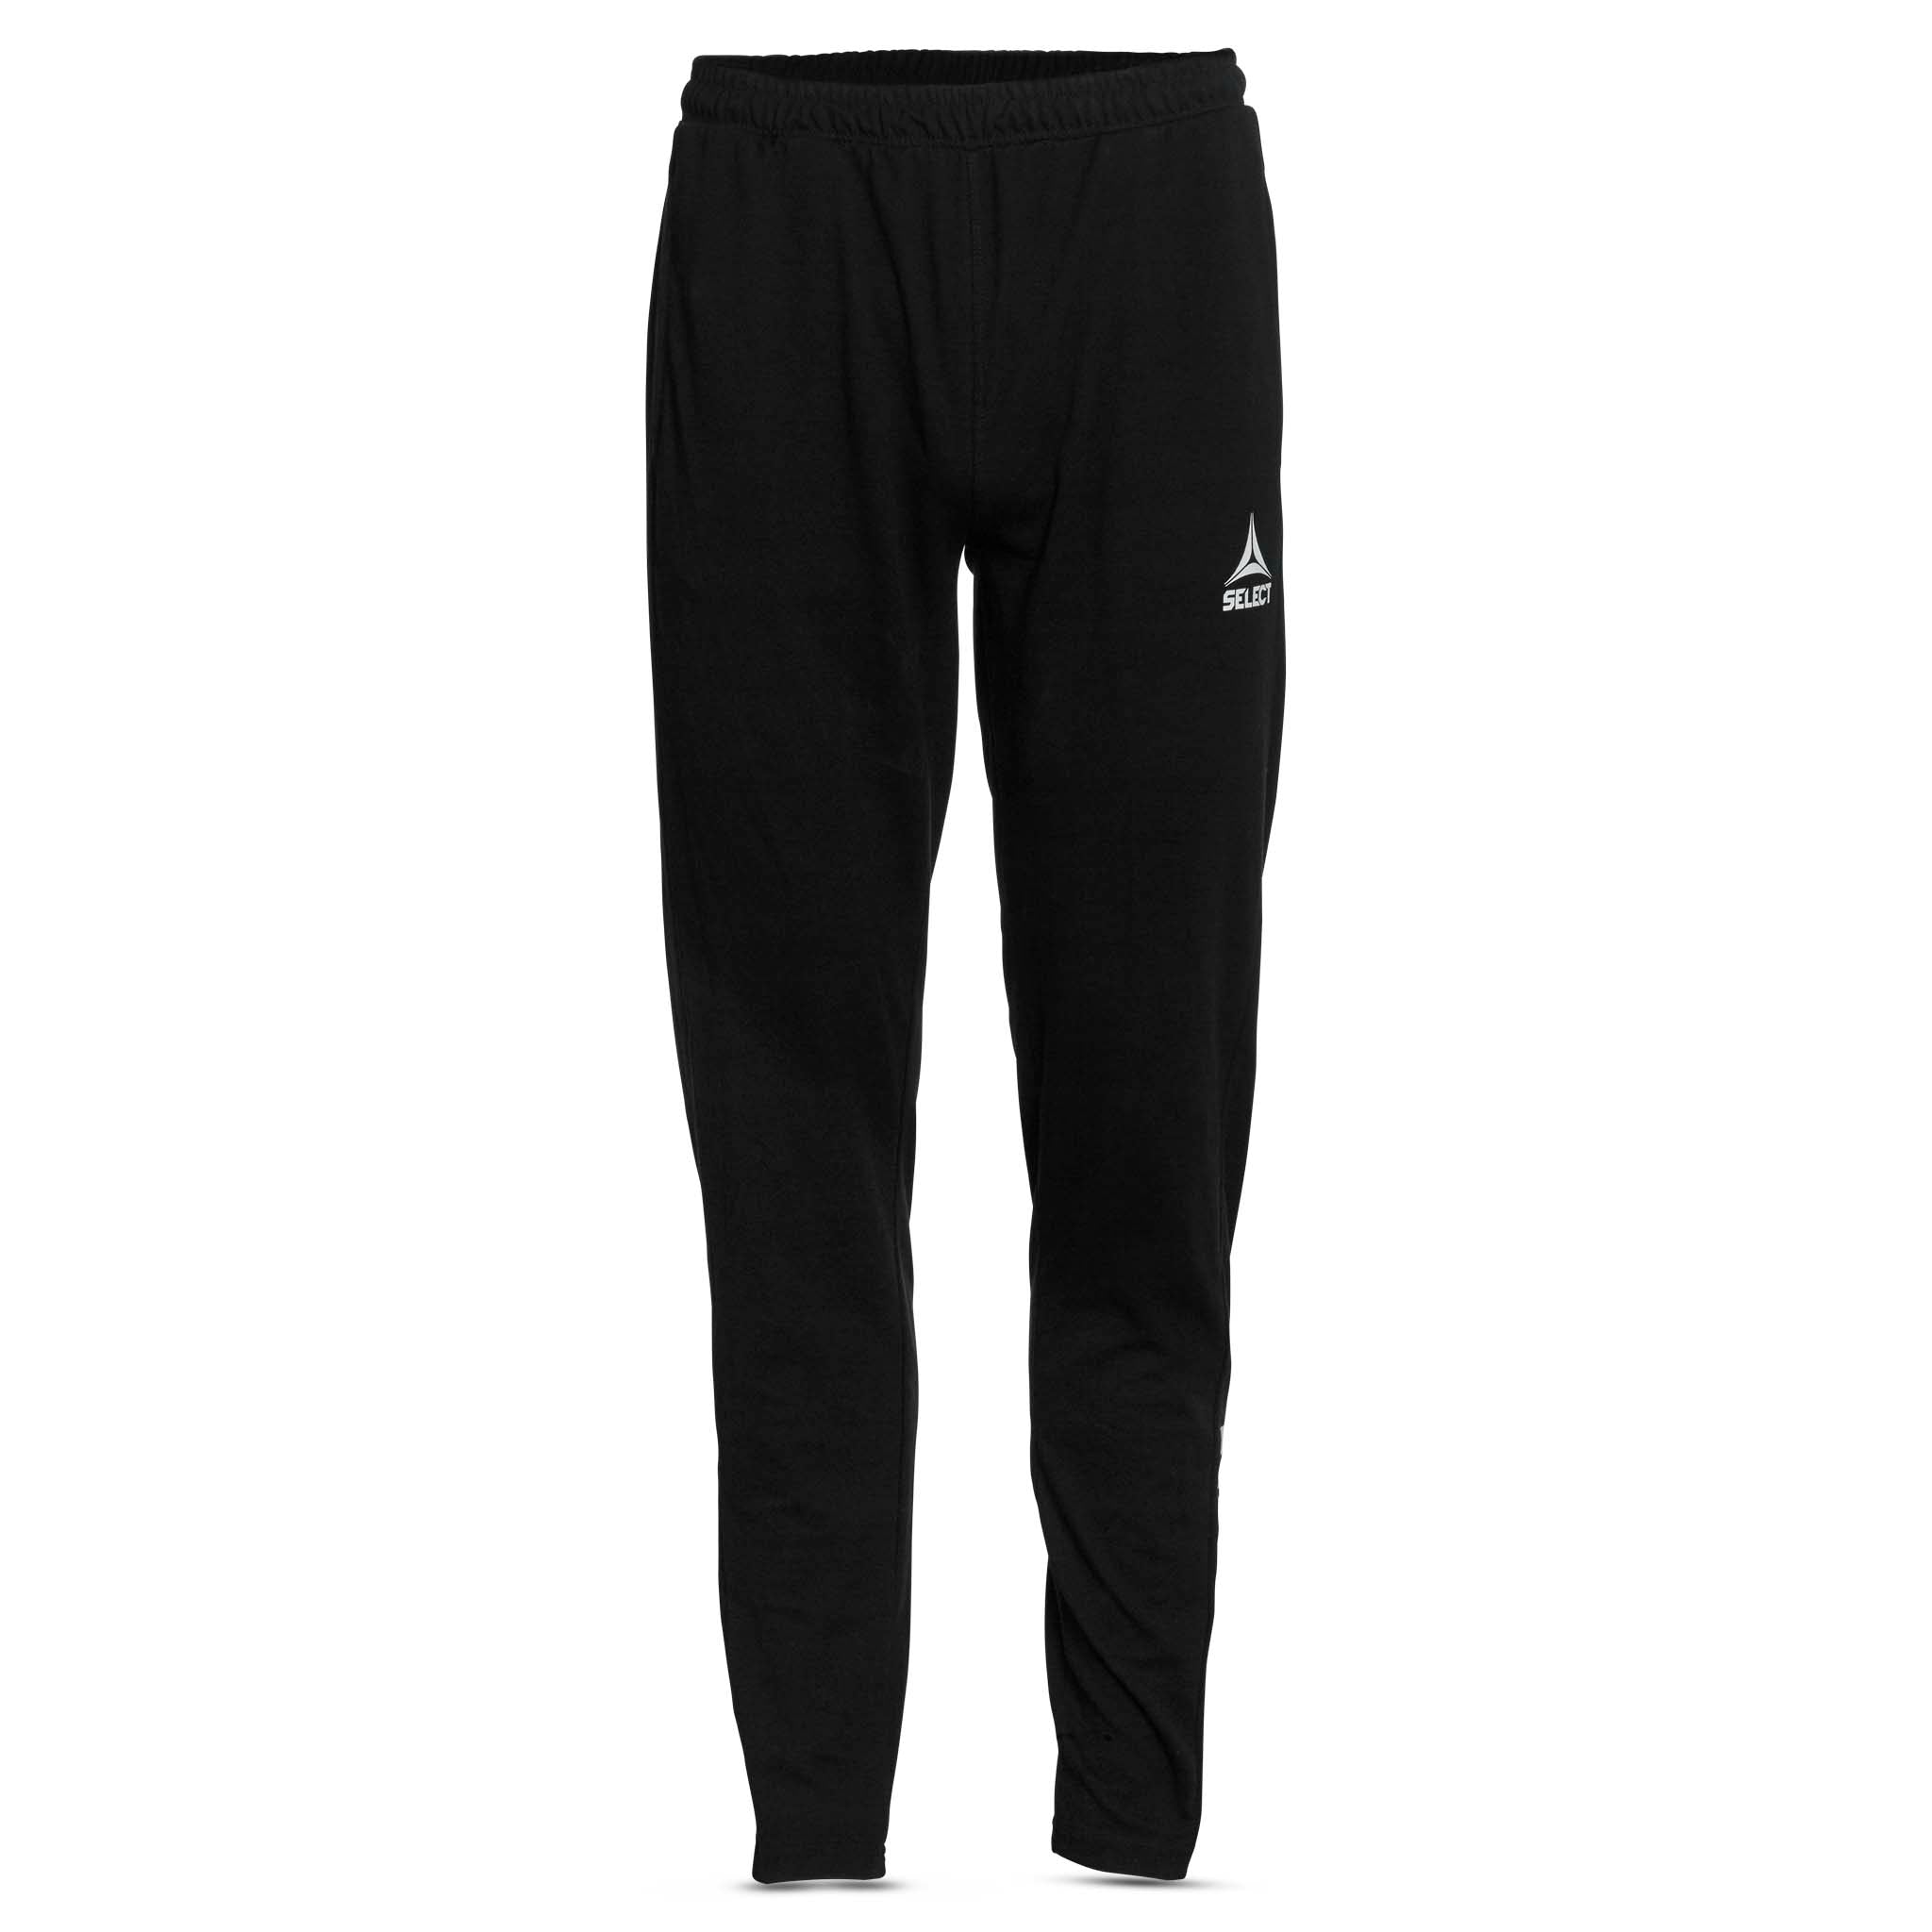 Handball pants - Monaco #colour_black